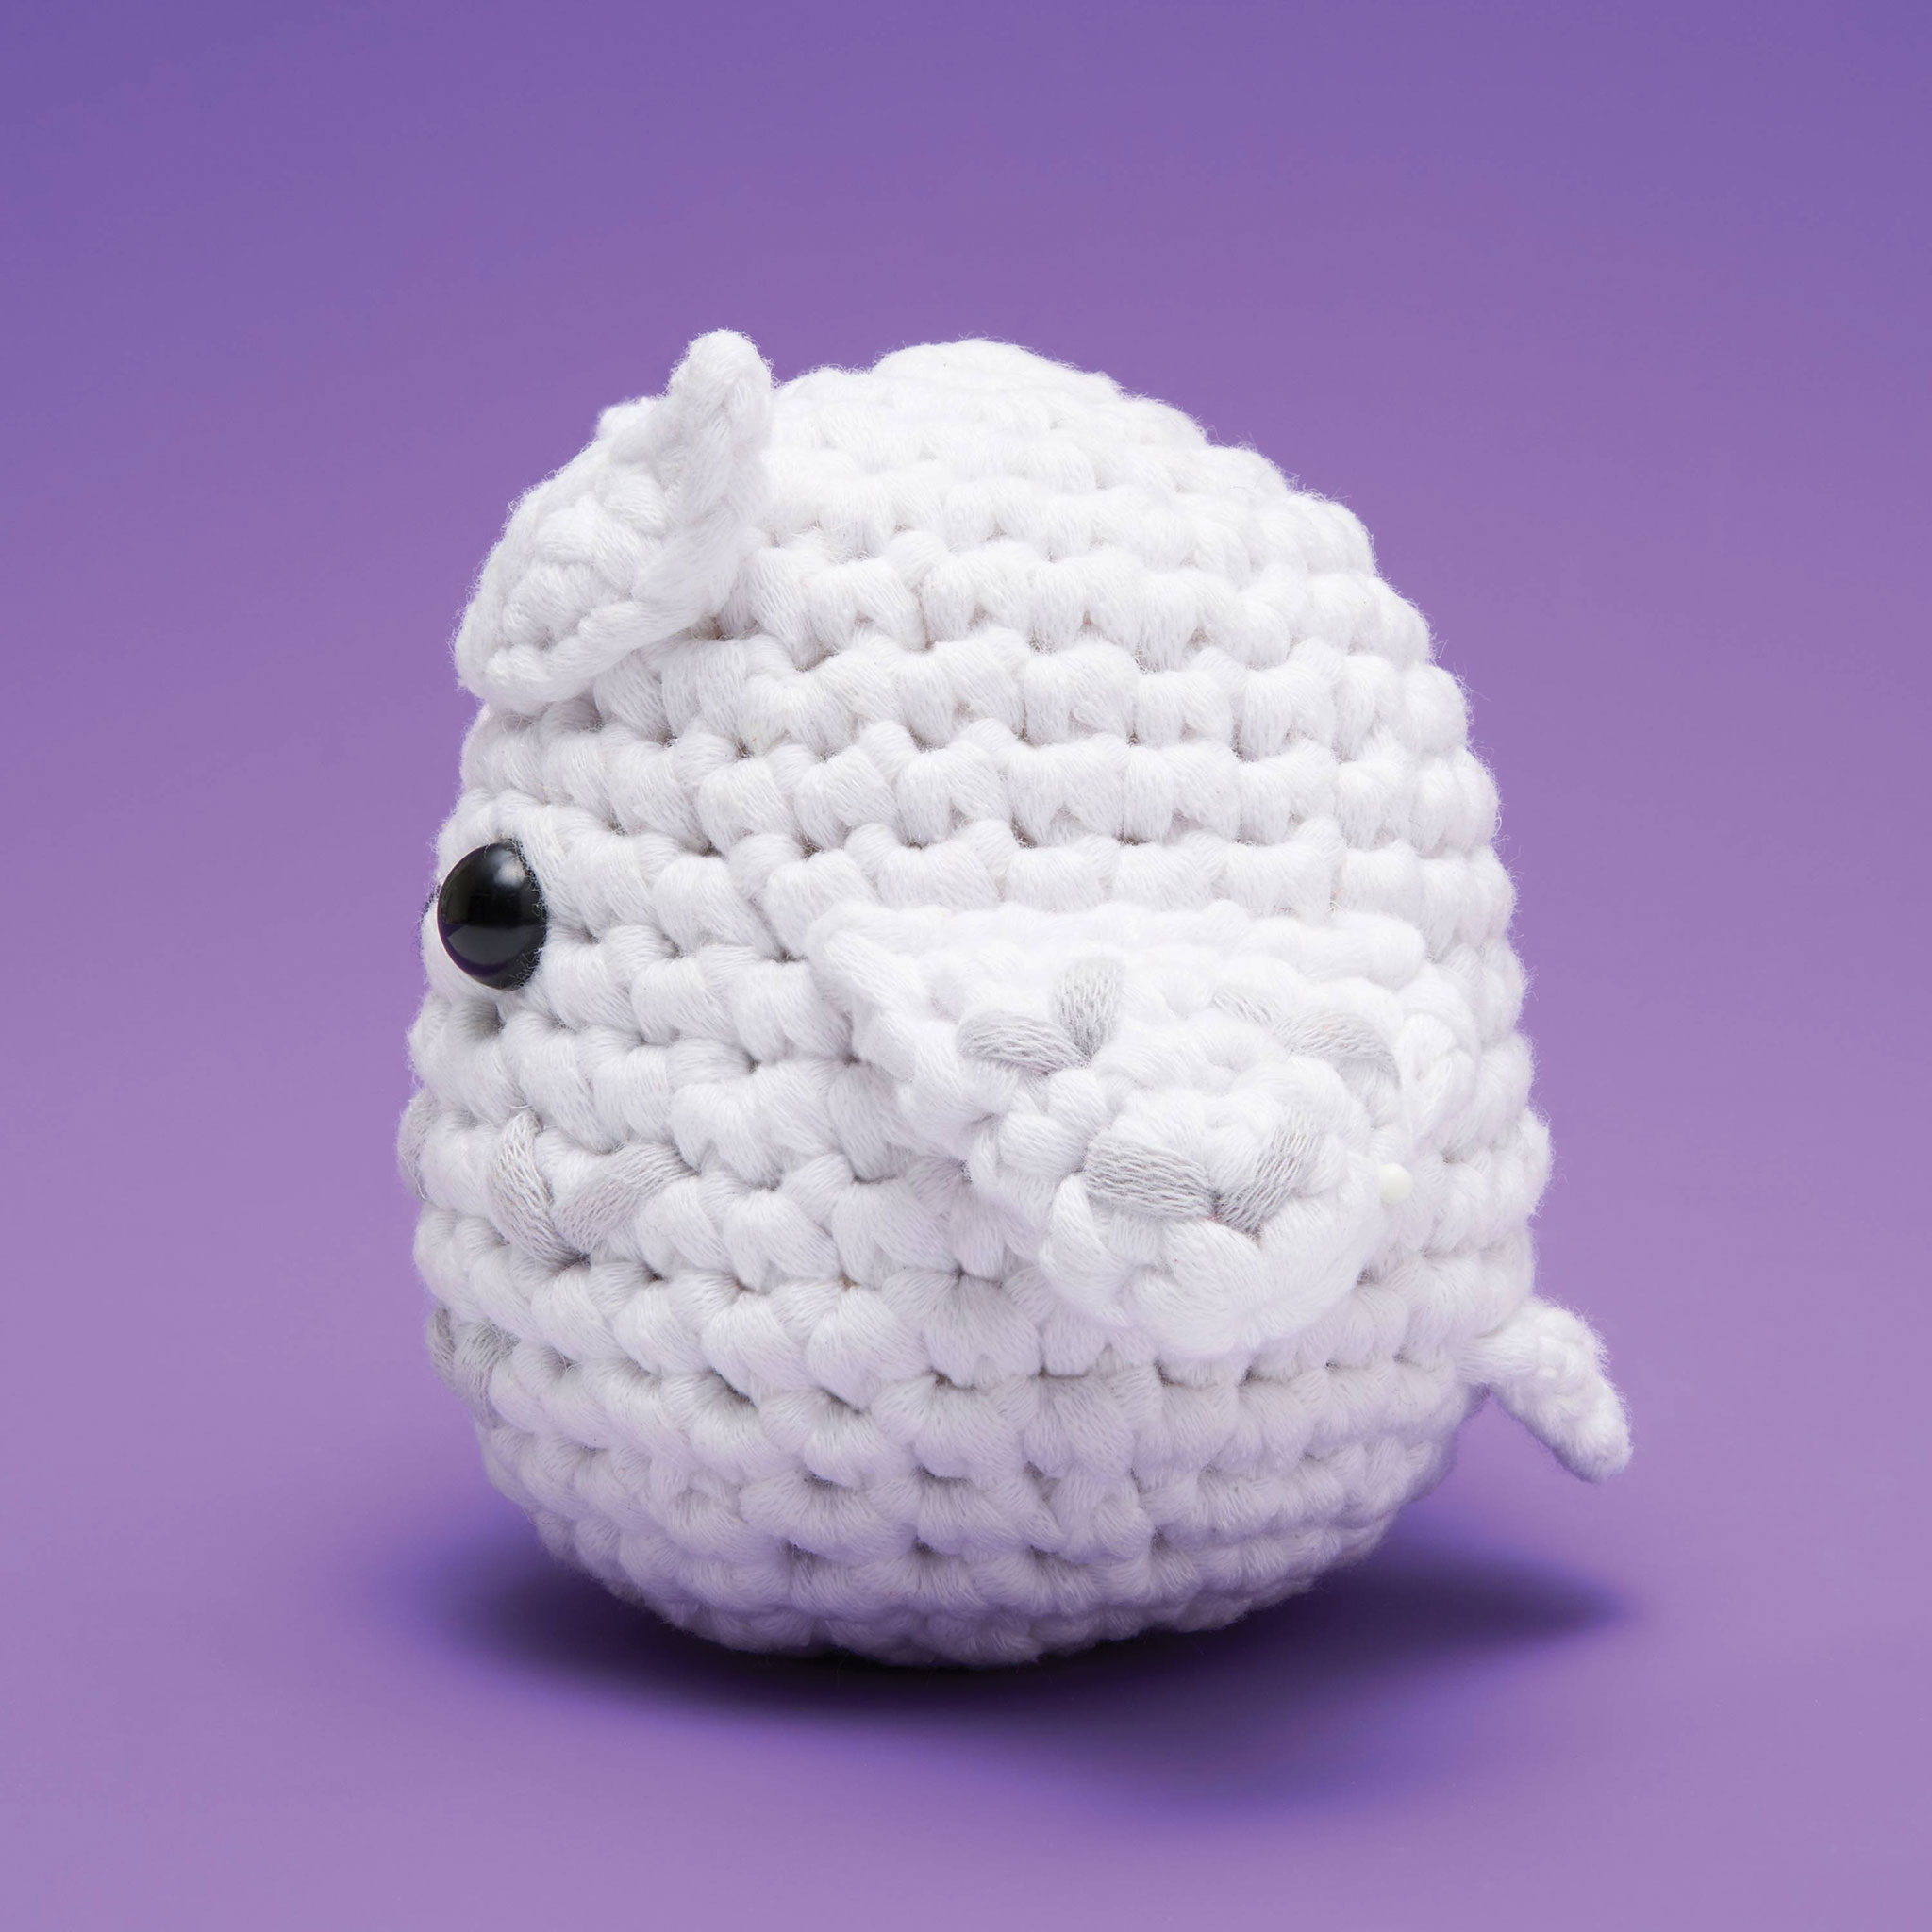 Owl Crochet Kit